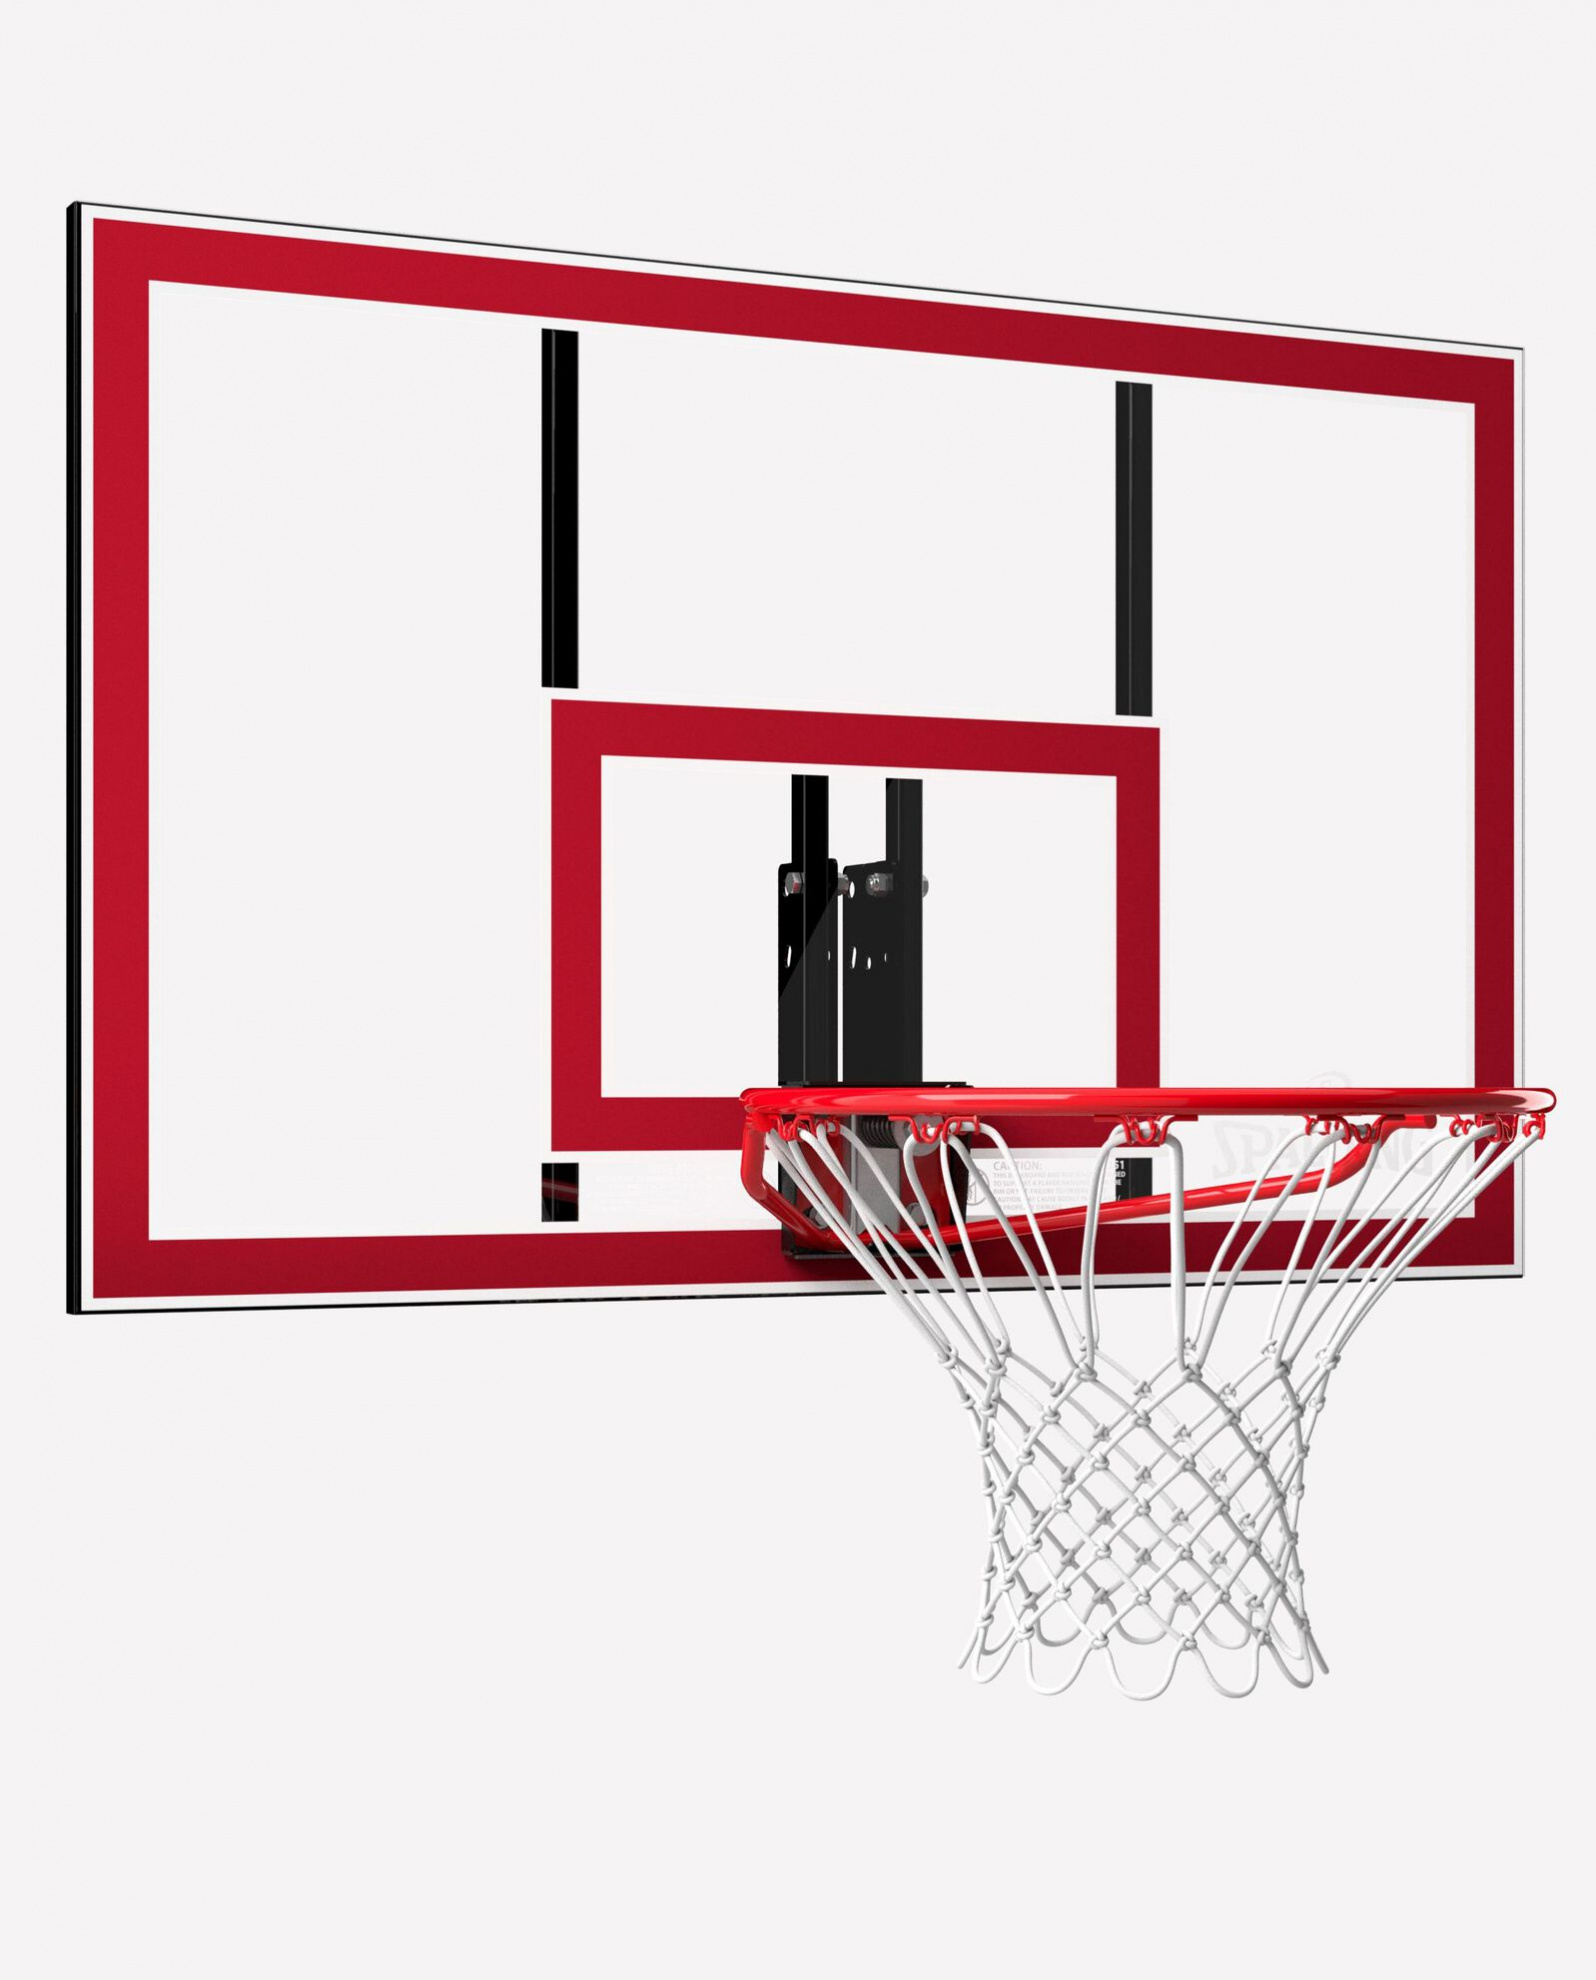 Баскетбольный щит Spalding Combo - Polycarbonate